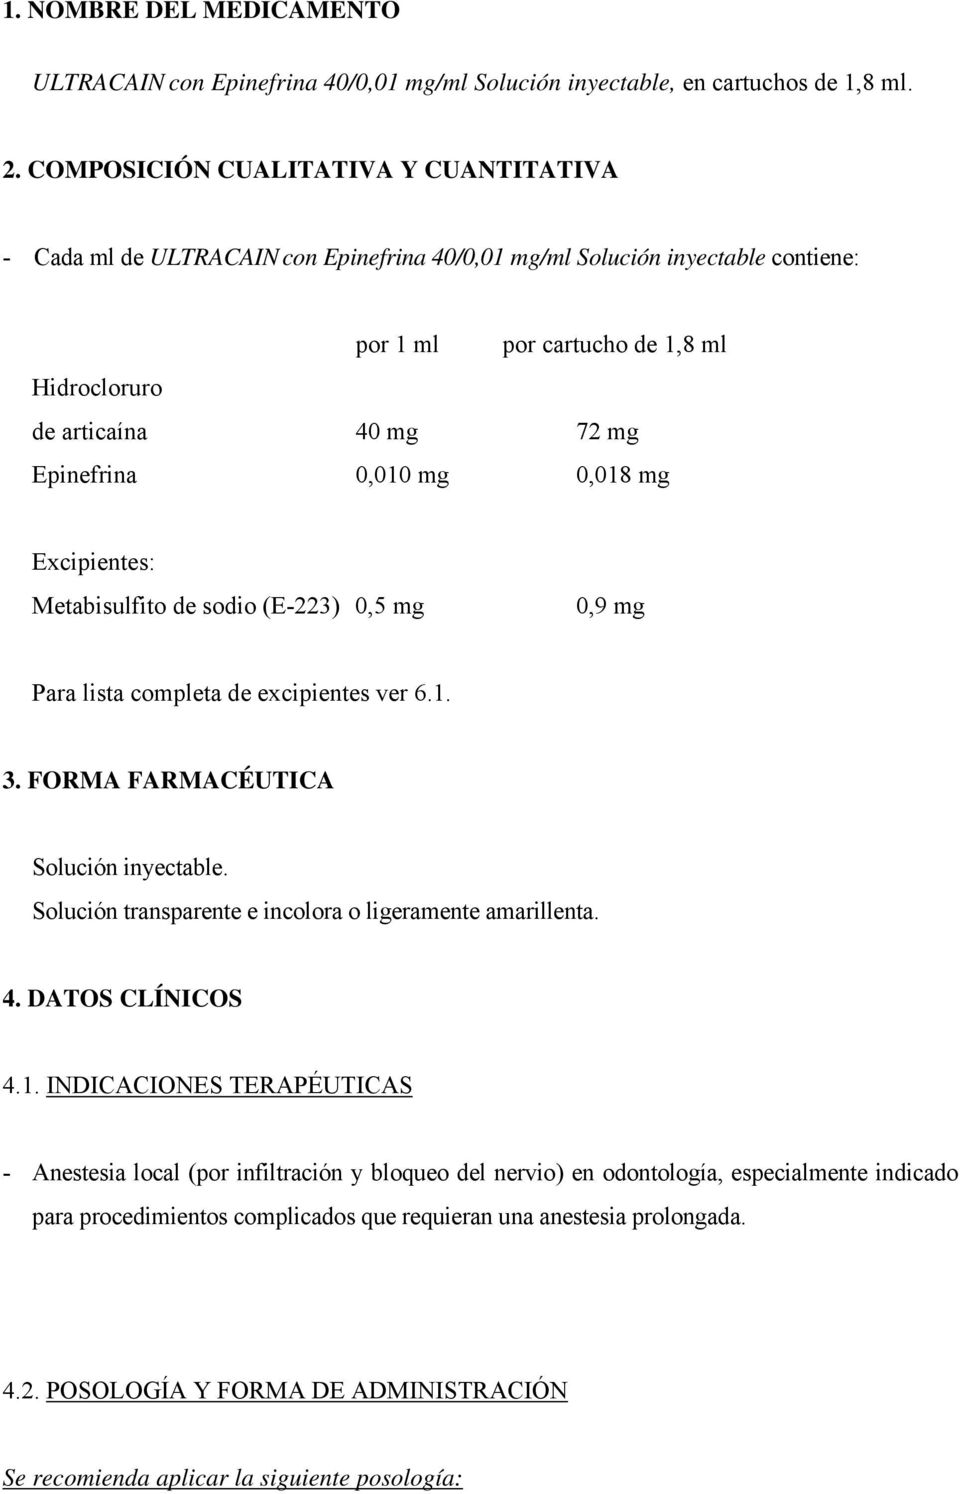 Epinefrina 0,010 mg 0,018 mg Excipientes: Metabisulfito de sodio (E-223) 0,5 mg 0,9 mg Para lista completa de excipientes ver 6.1. 3. FORMA FARMACÉUTICA Solución inyectable.